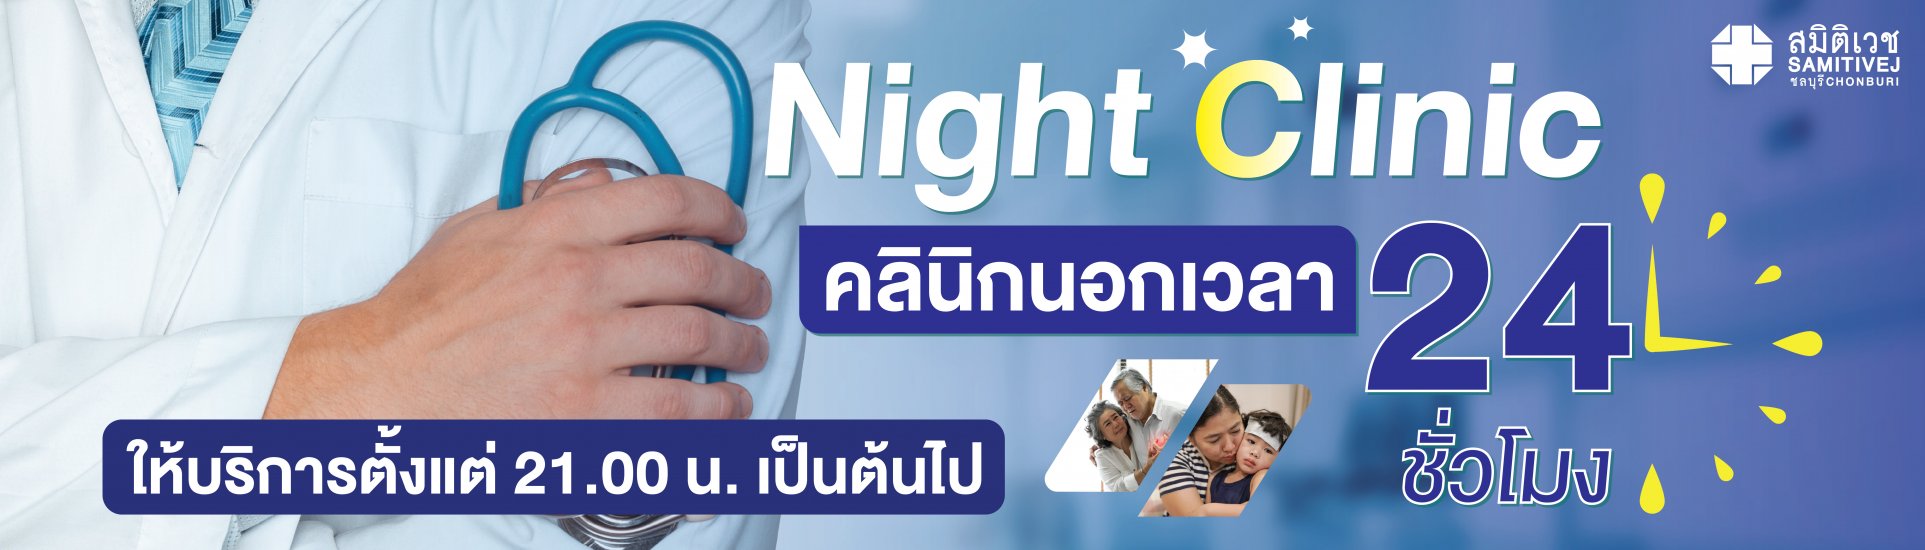 Night Clinic Samitivej Chonburi-samitivejchonburi-slide